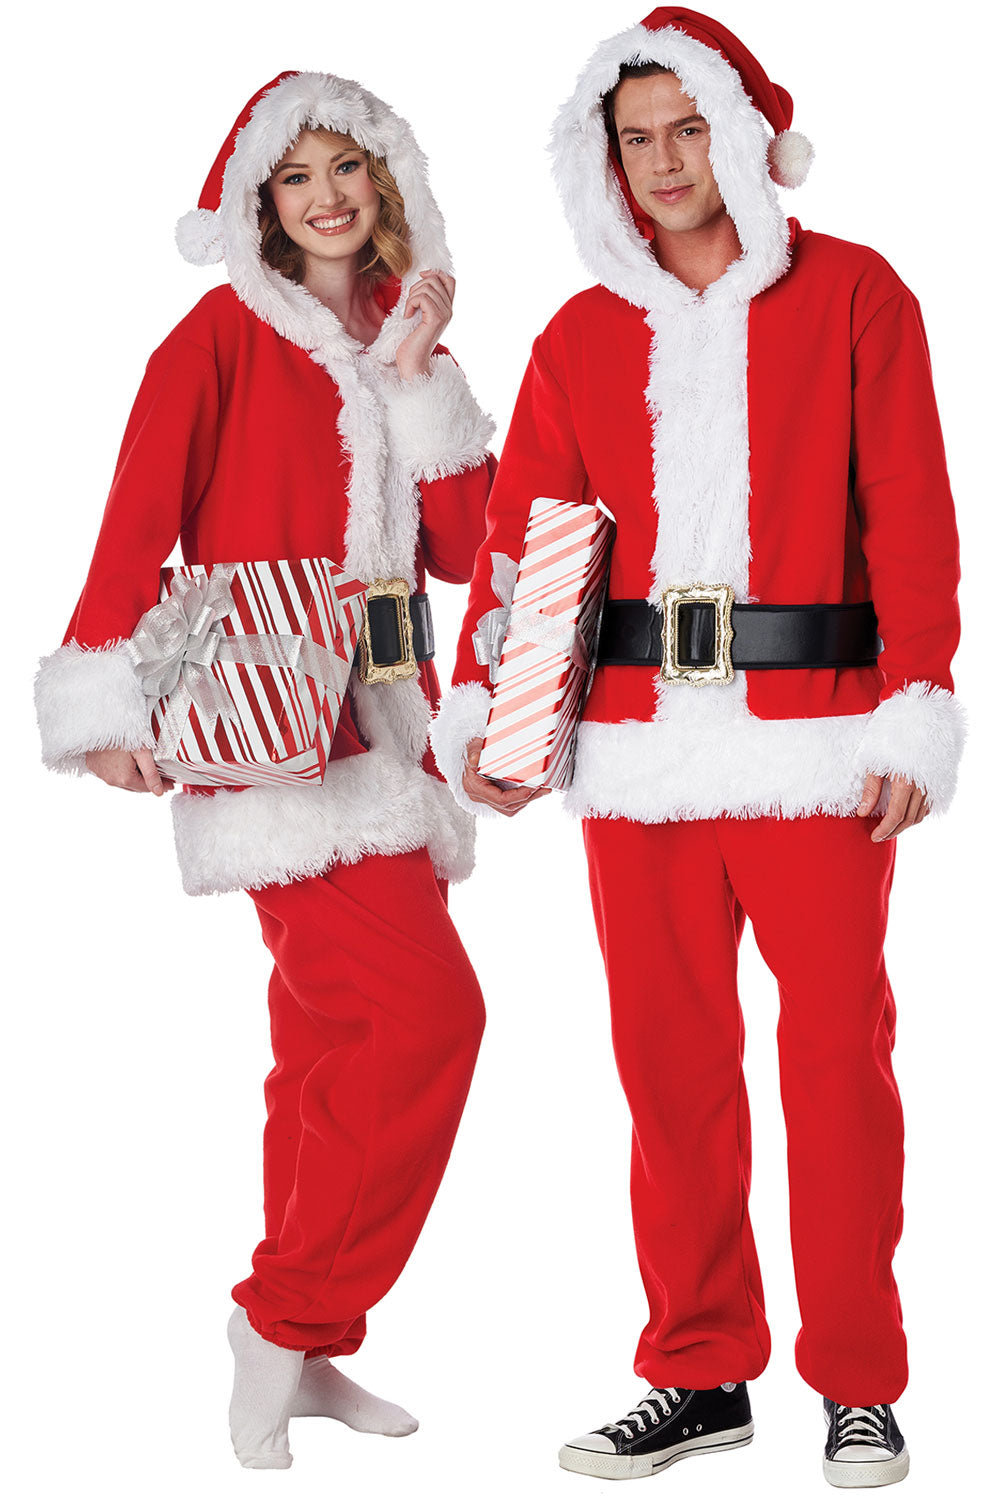 Santa Onesie / Adult California Costume 5221-176